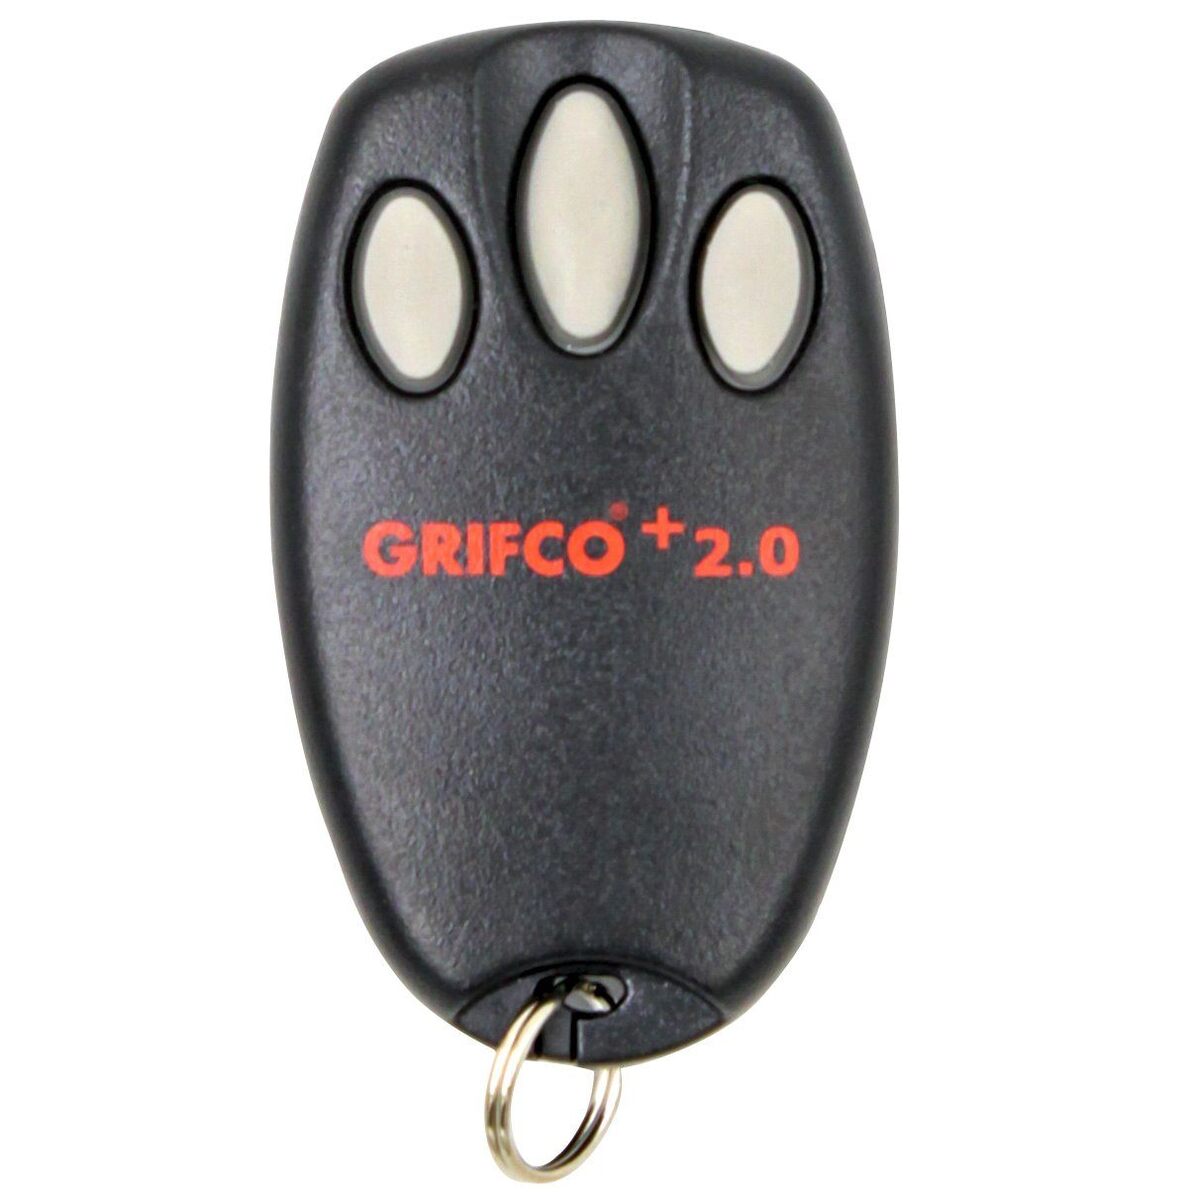 Grifco+ 2.0 E945/E945G Genuine Remote